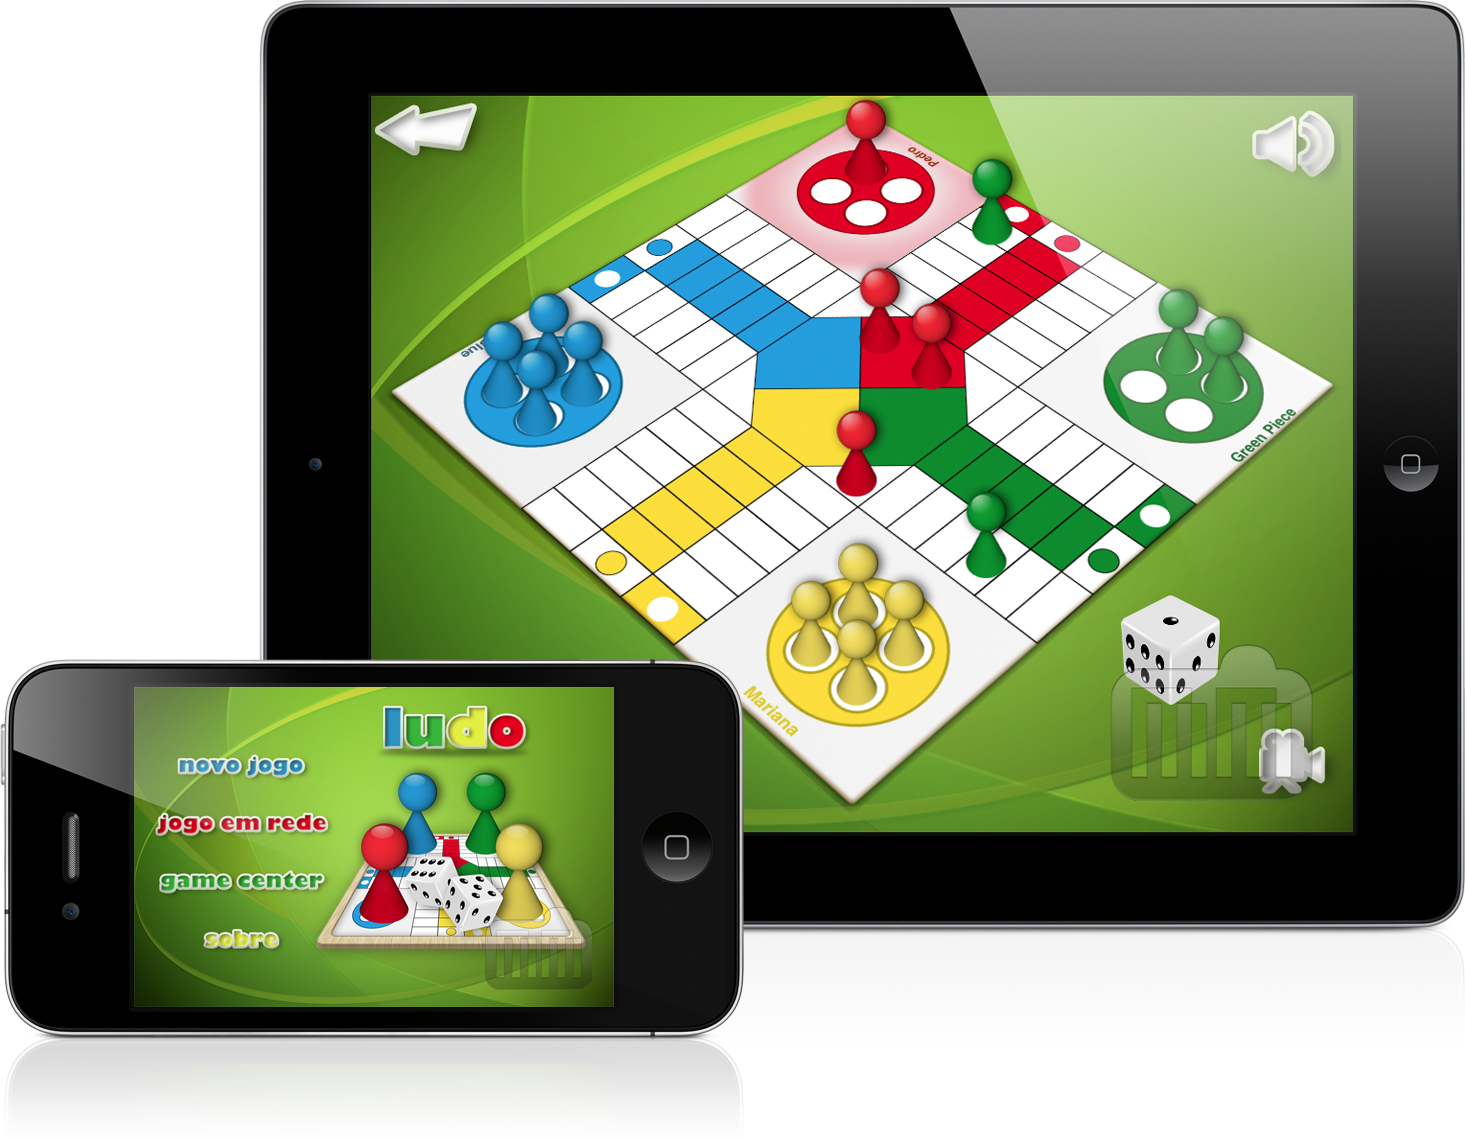 Clássico jogo Ludo ganha versão para iPads e iPhones/iPods touch -  MacMagazine